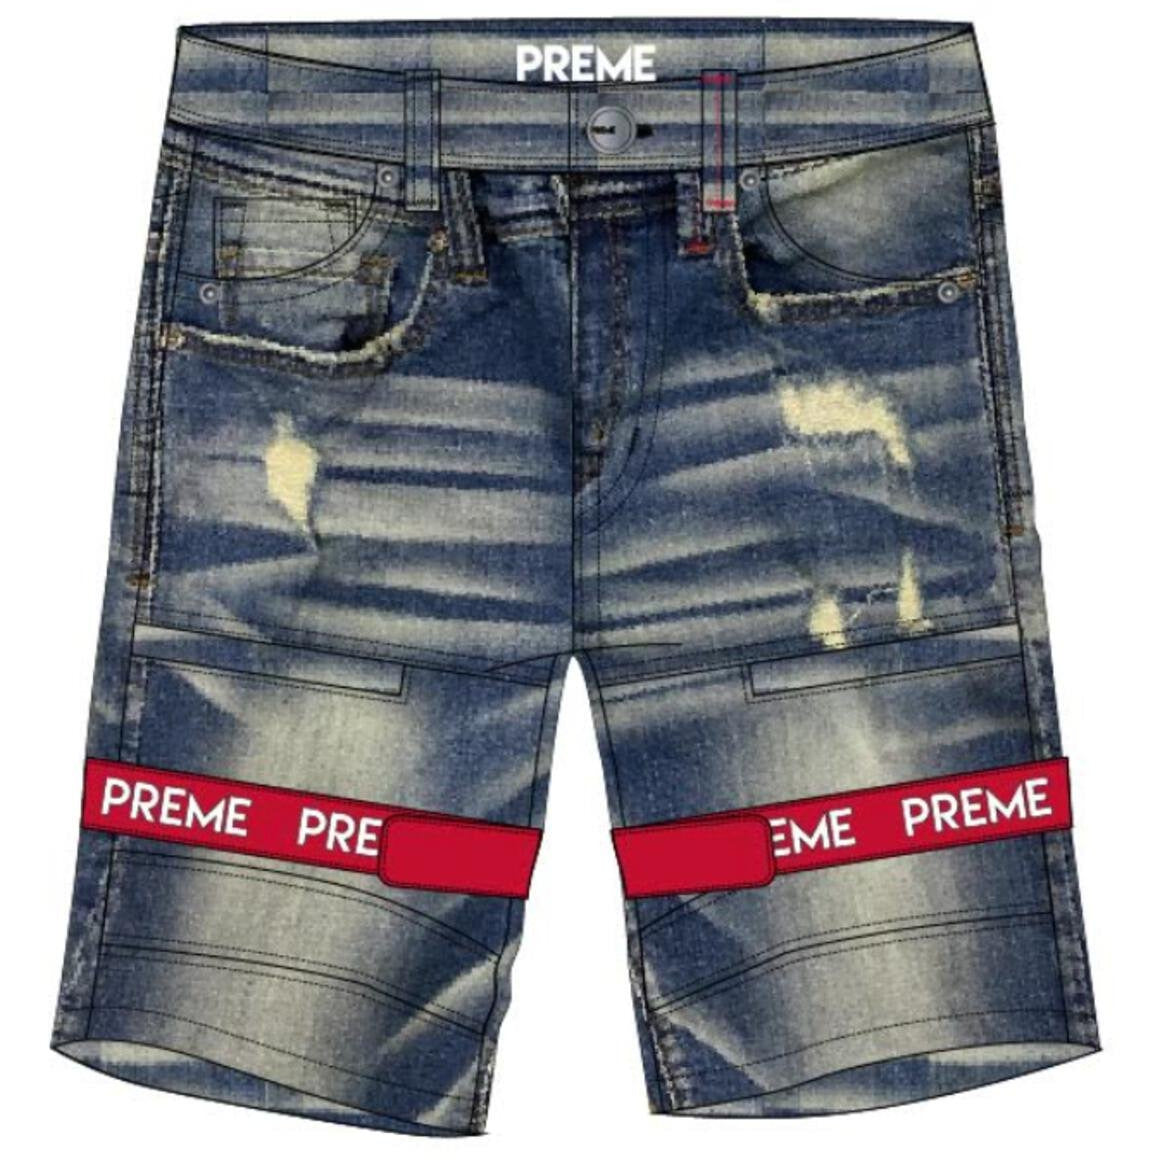 Preme Shorts Indigo w/Red Preme Strap (PR-WB-846) – Fresh Society